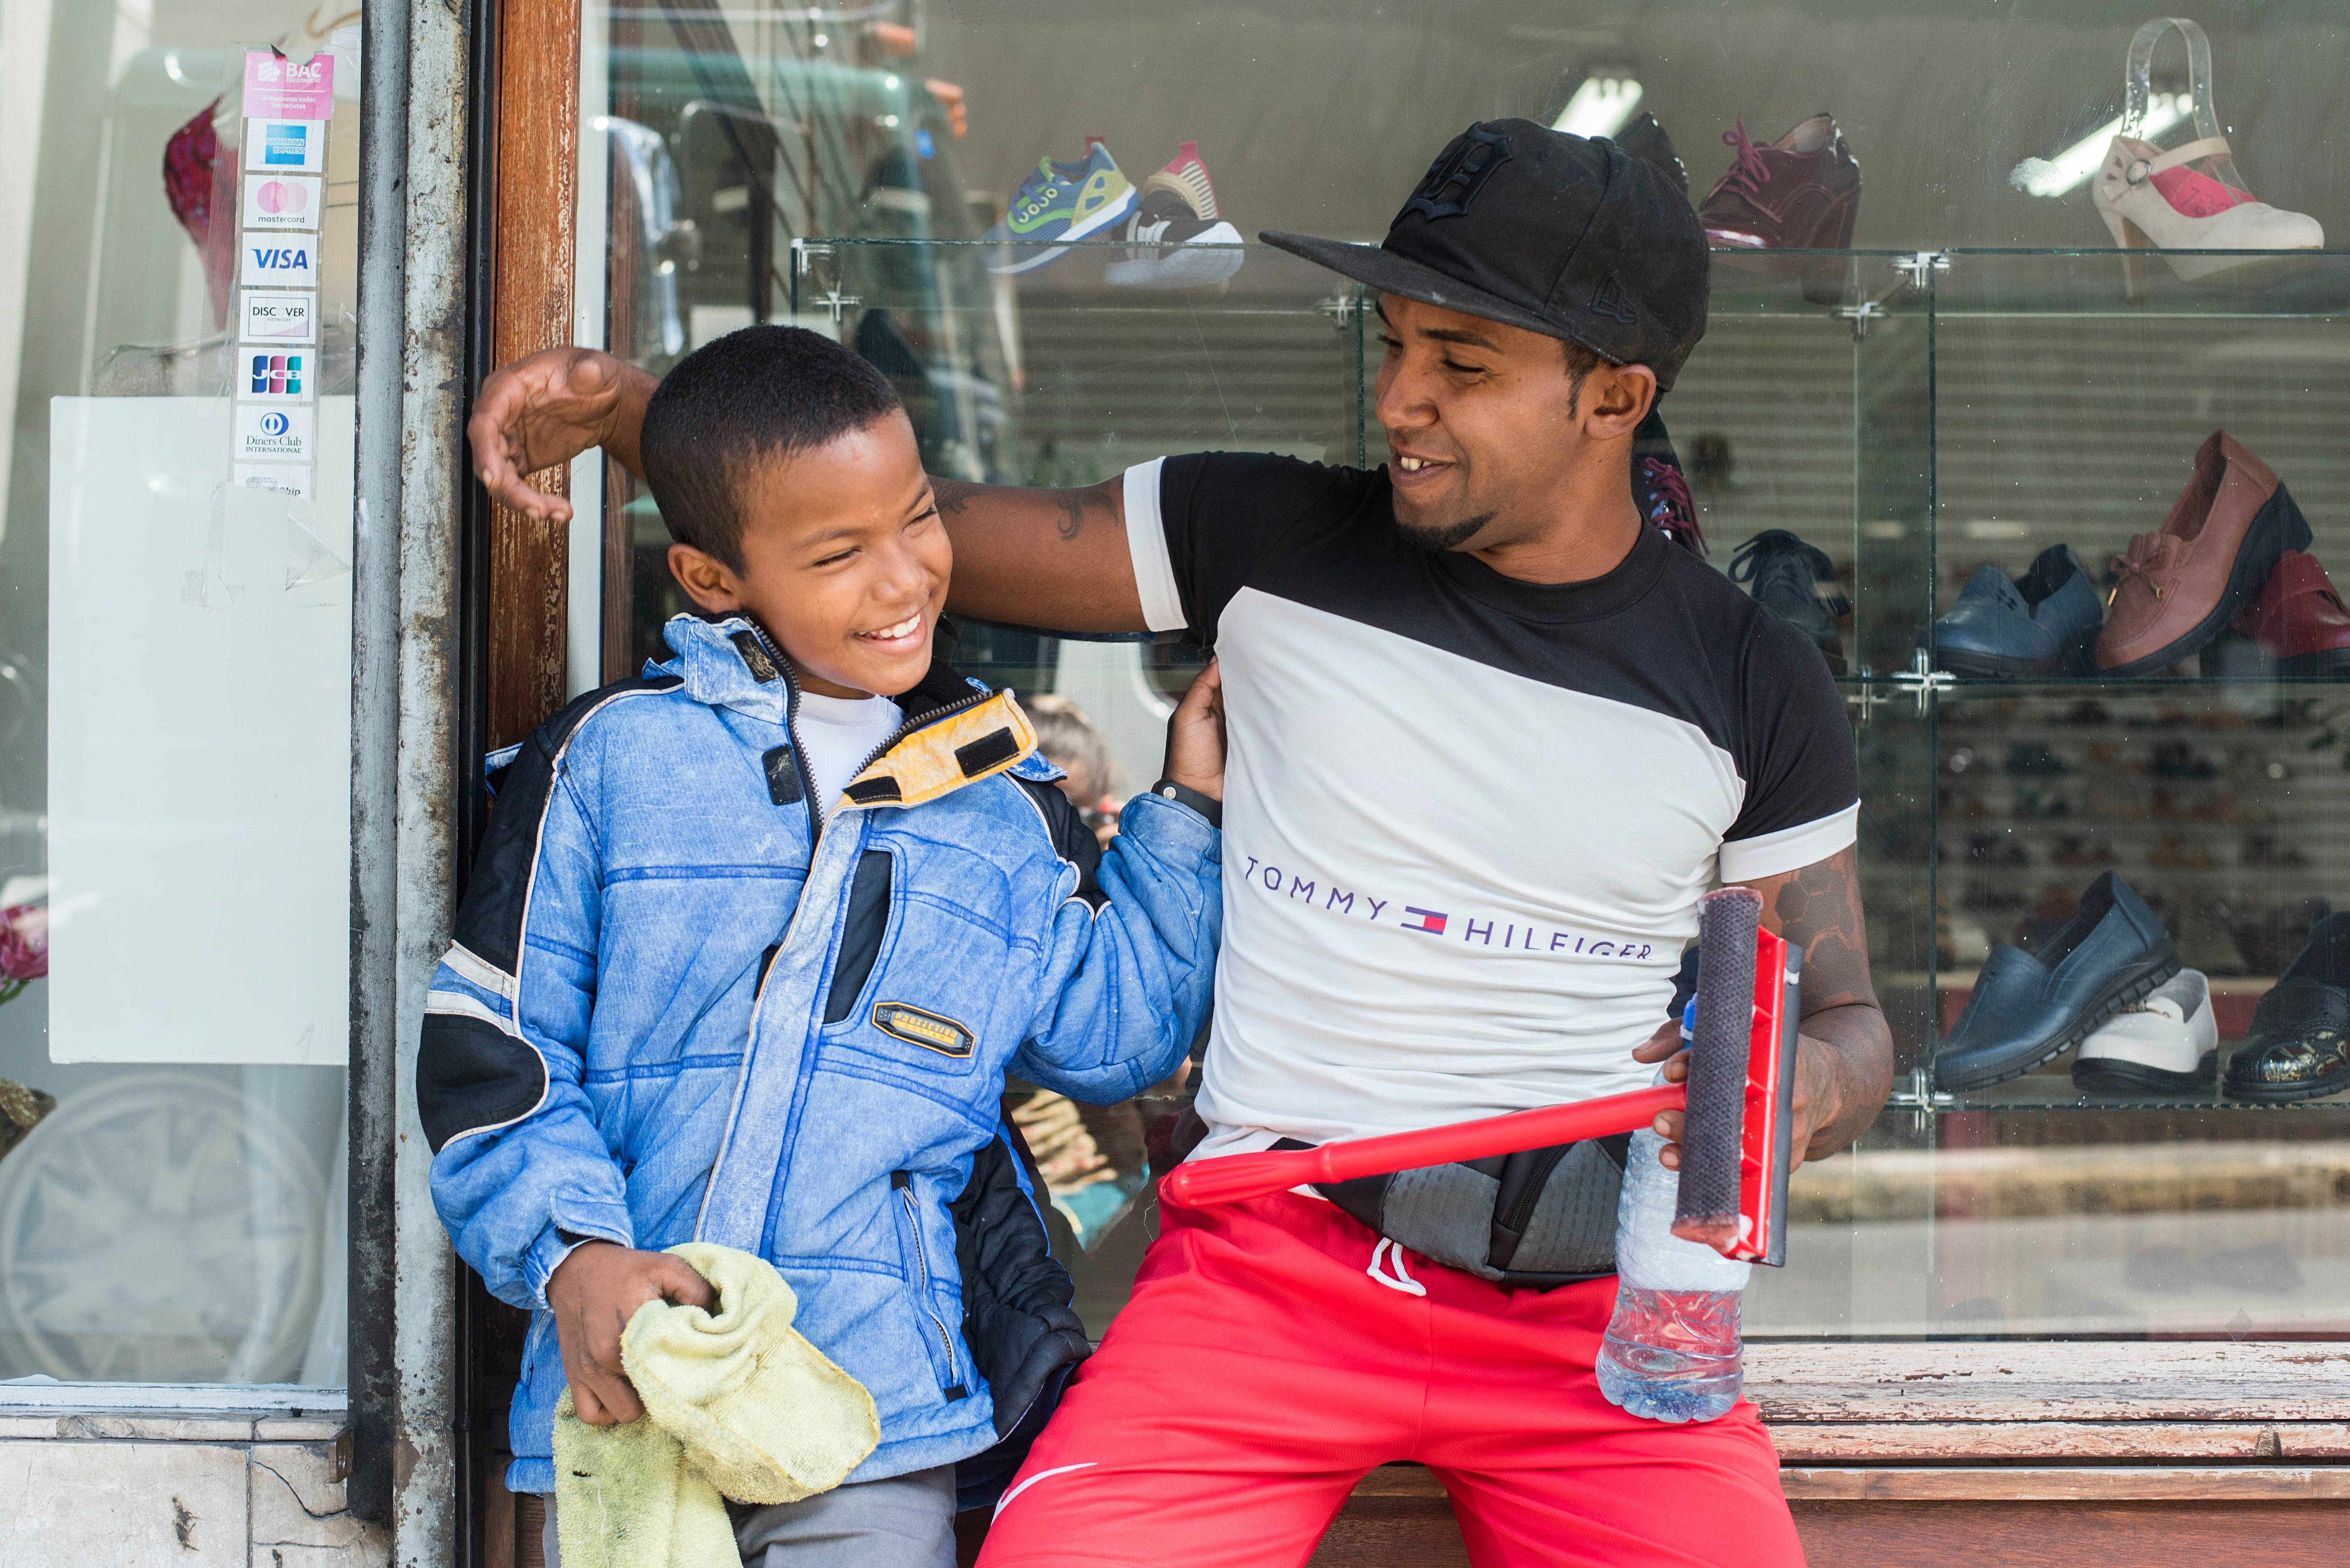 Richard y Aarón. Padre e hijo personifican al migrante que salió de Venezuela con el objetivo de mejorar su vida y tienen una relación digna de documentarse.